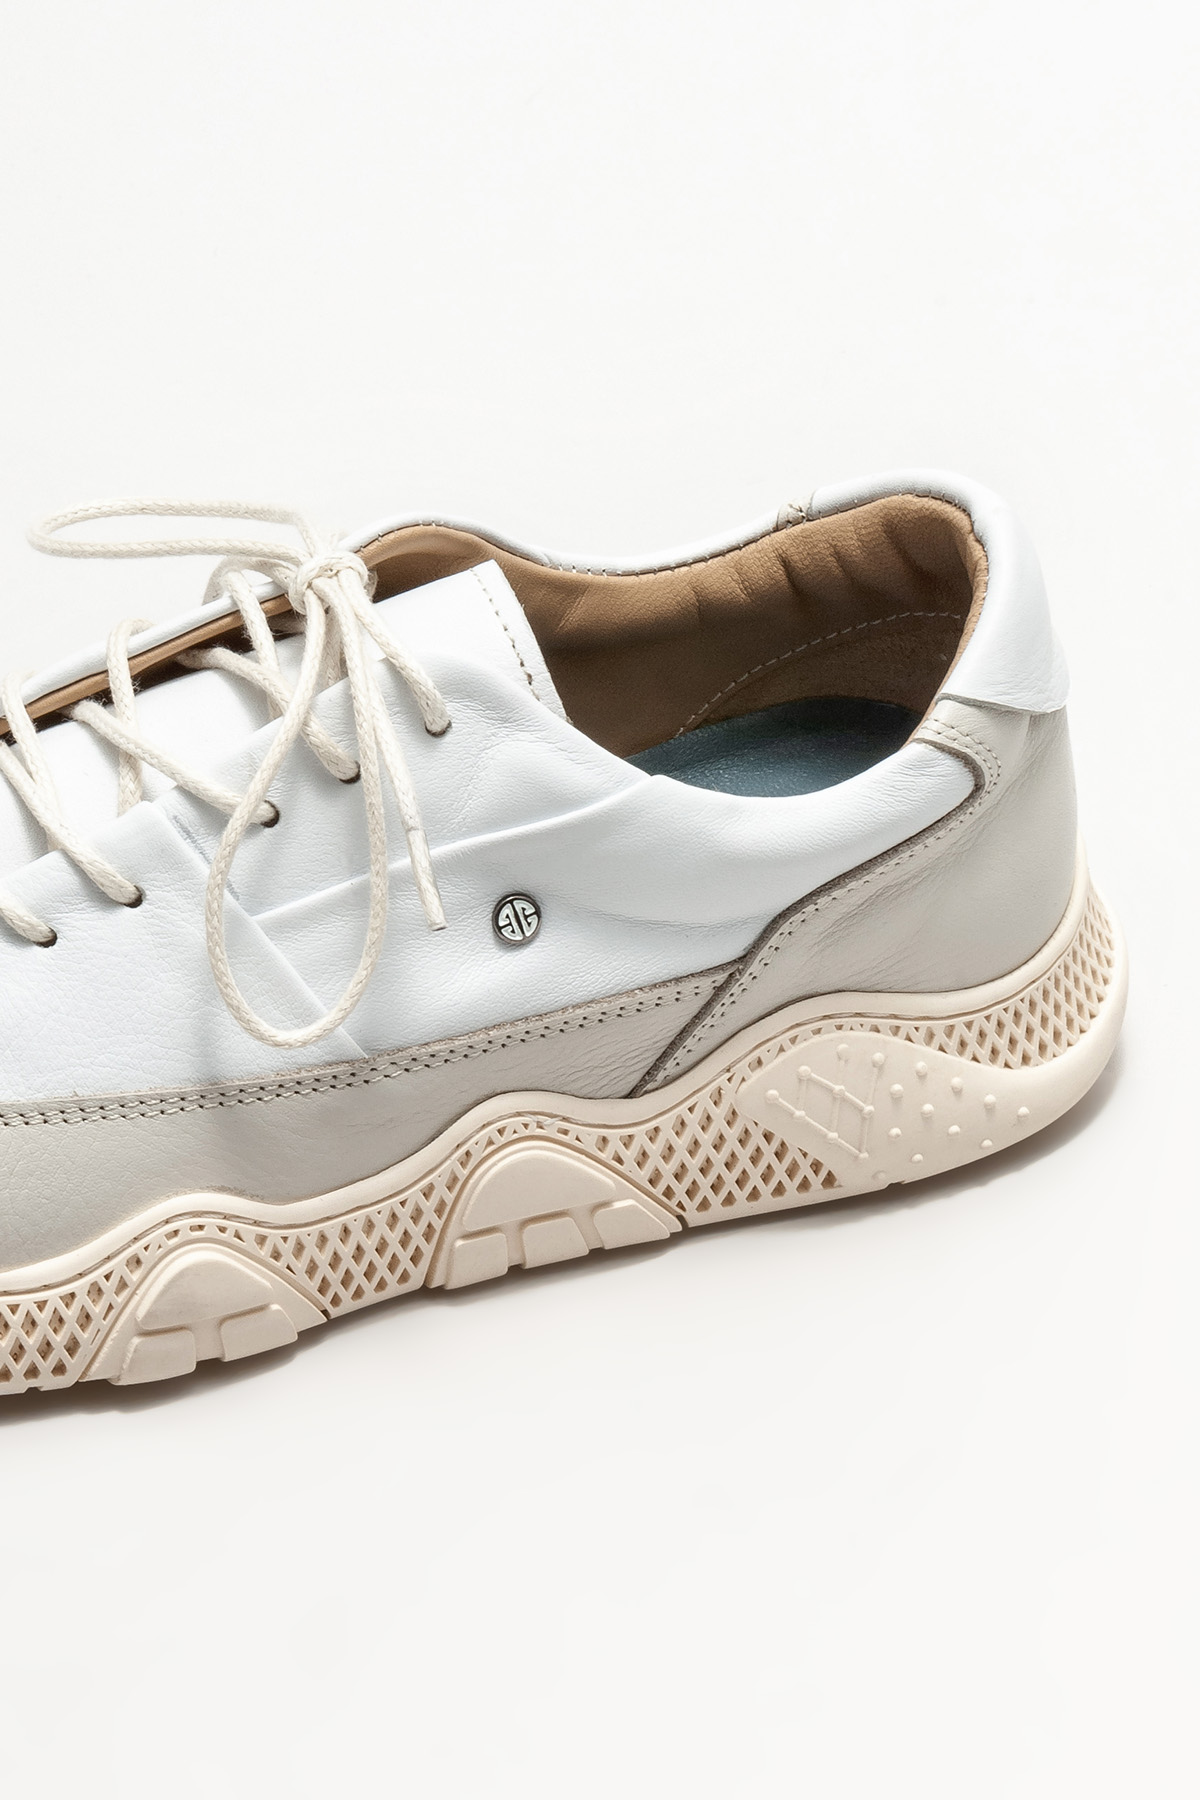 Beyaz Hakiki Deri Erkek Spor Ayakkabı Satın Al! AKASH-02 Fiyatı | Elle Shoes